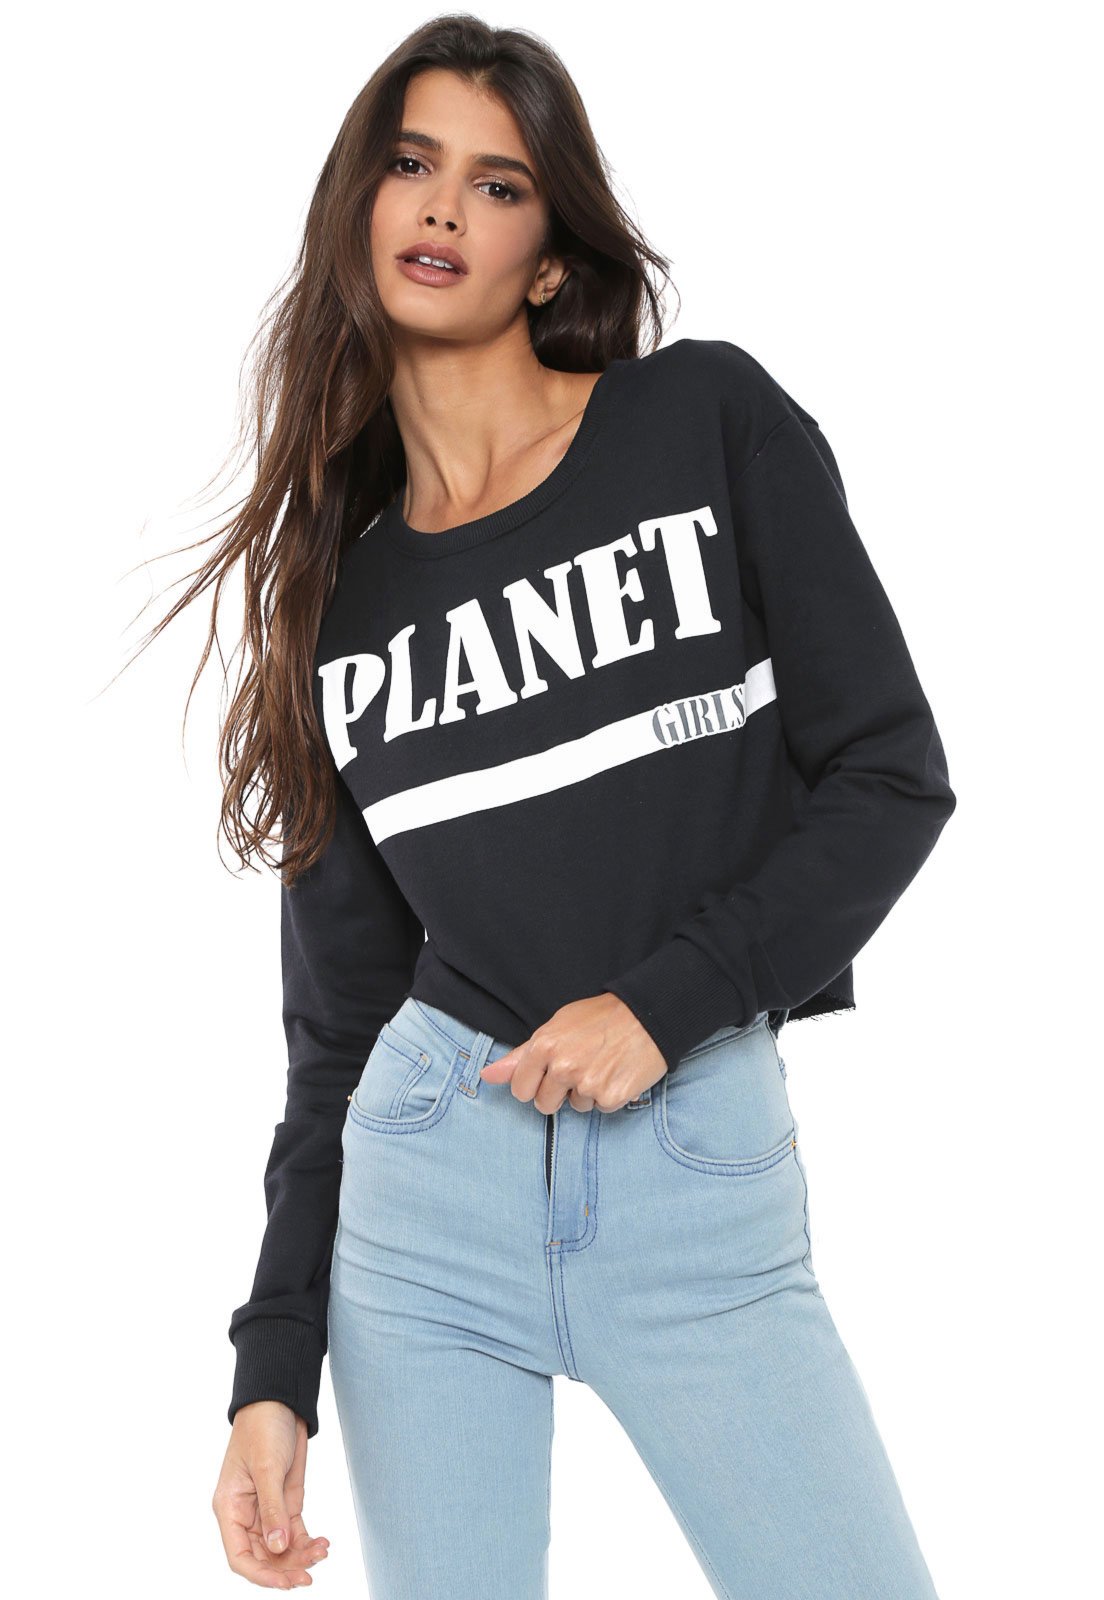 moletom planet girl 2019